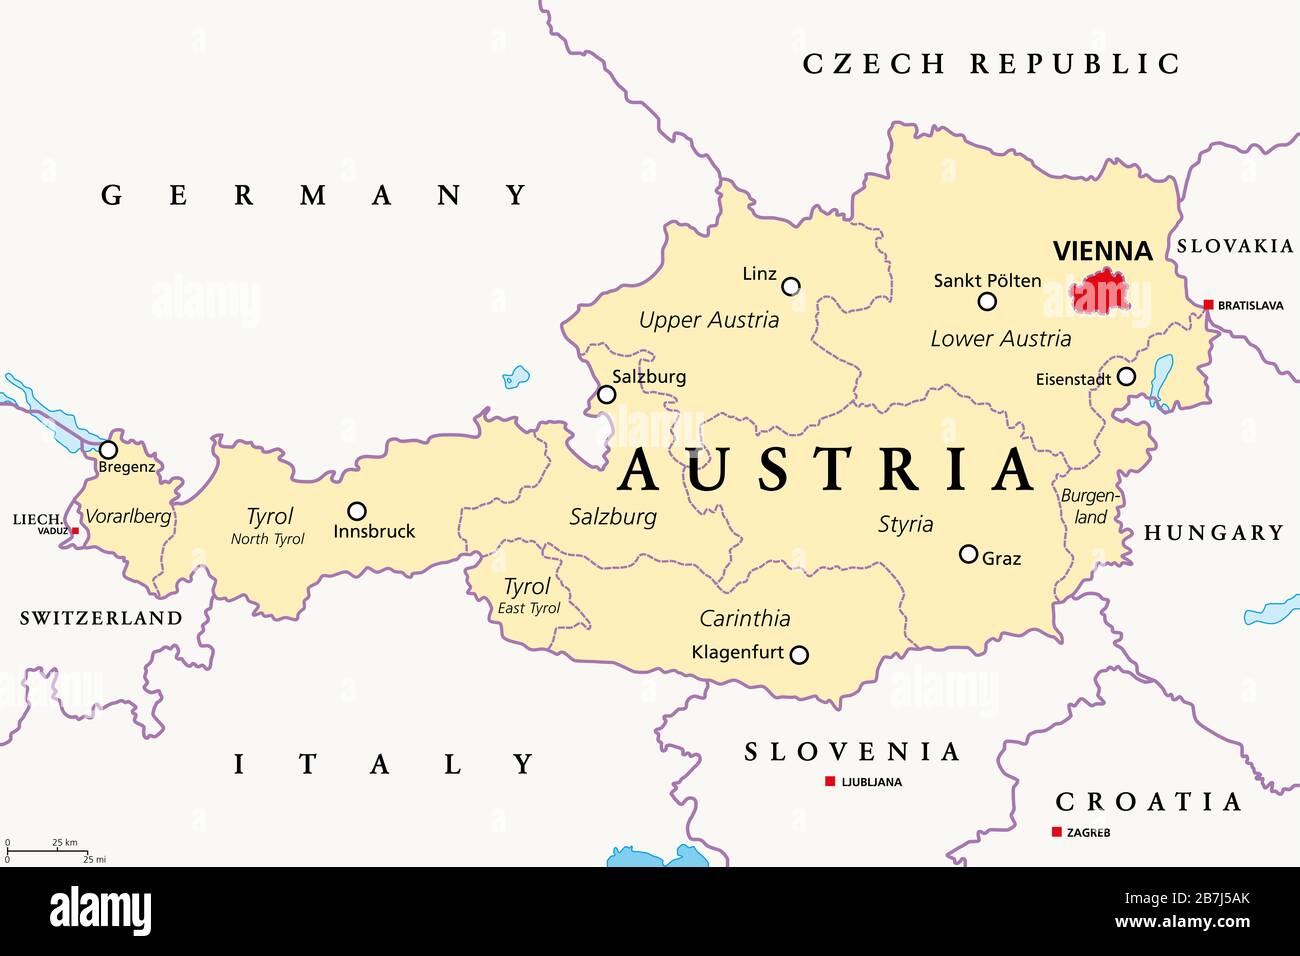 Autriche, carte politique, avec la capitale Vienne, neuf États fédérés et leurs capitales. Avec les frontières et les pays voisins. Étiquetage anglais. Banque D'Images